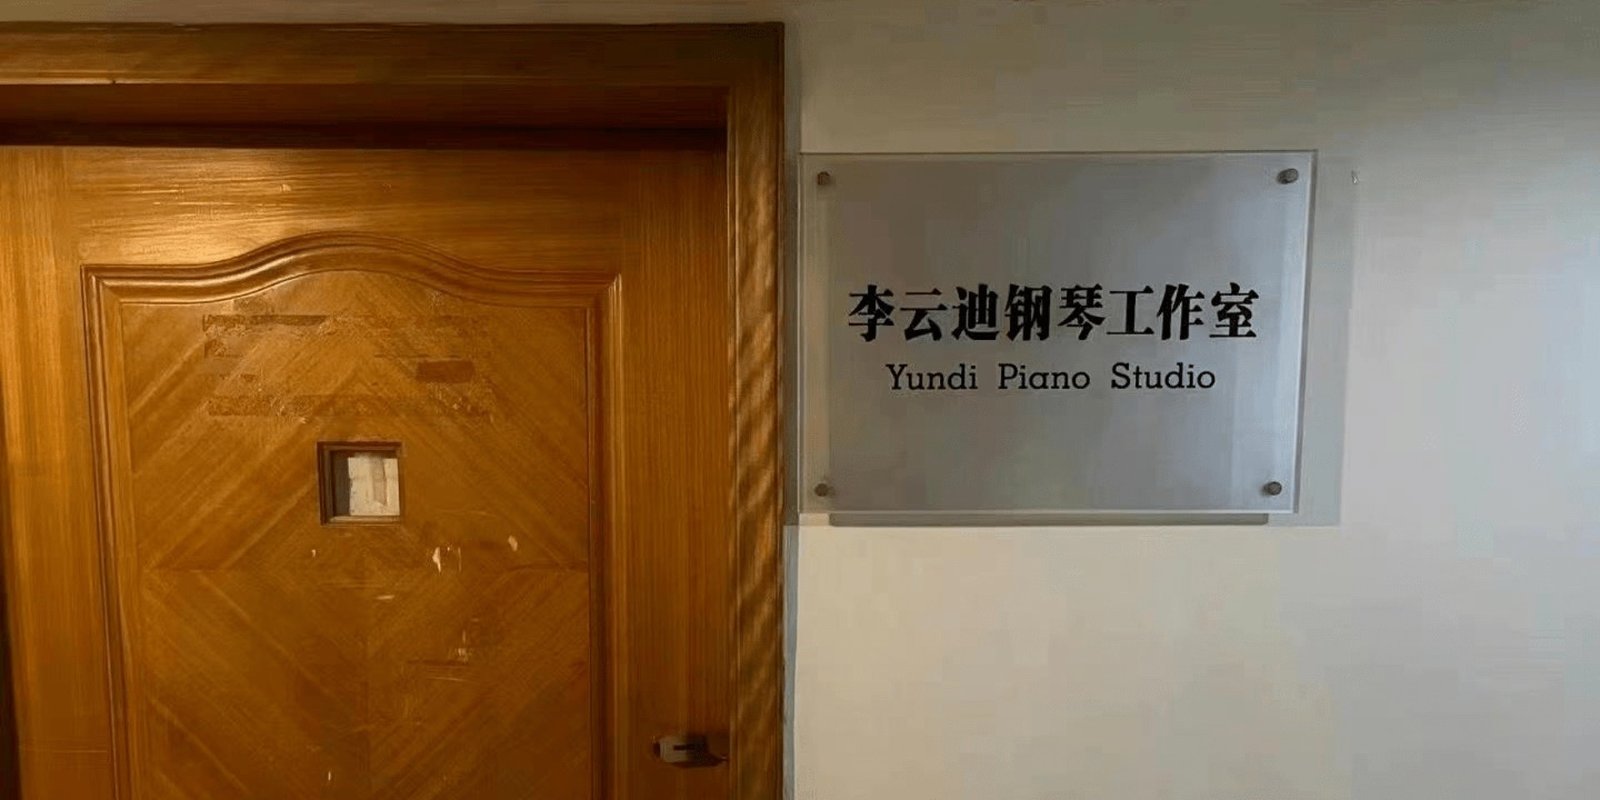 “李云迪钢琴工作室”的牌子也被连夜摘除。